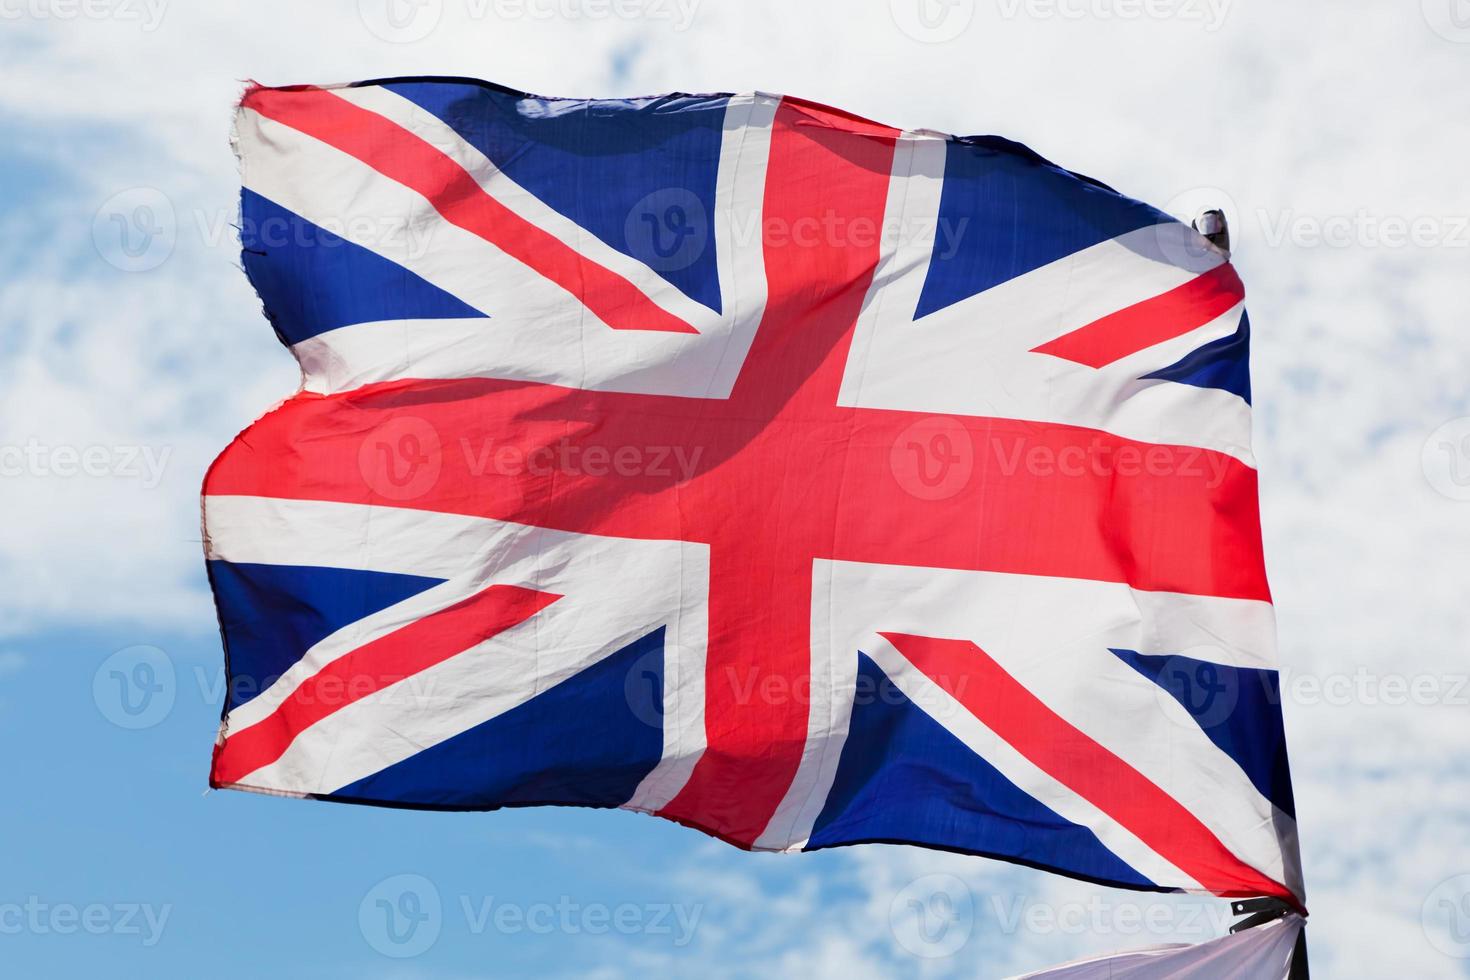 a união jack, a bandeira nacional do reino unido balançando no vento foto